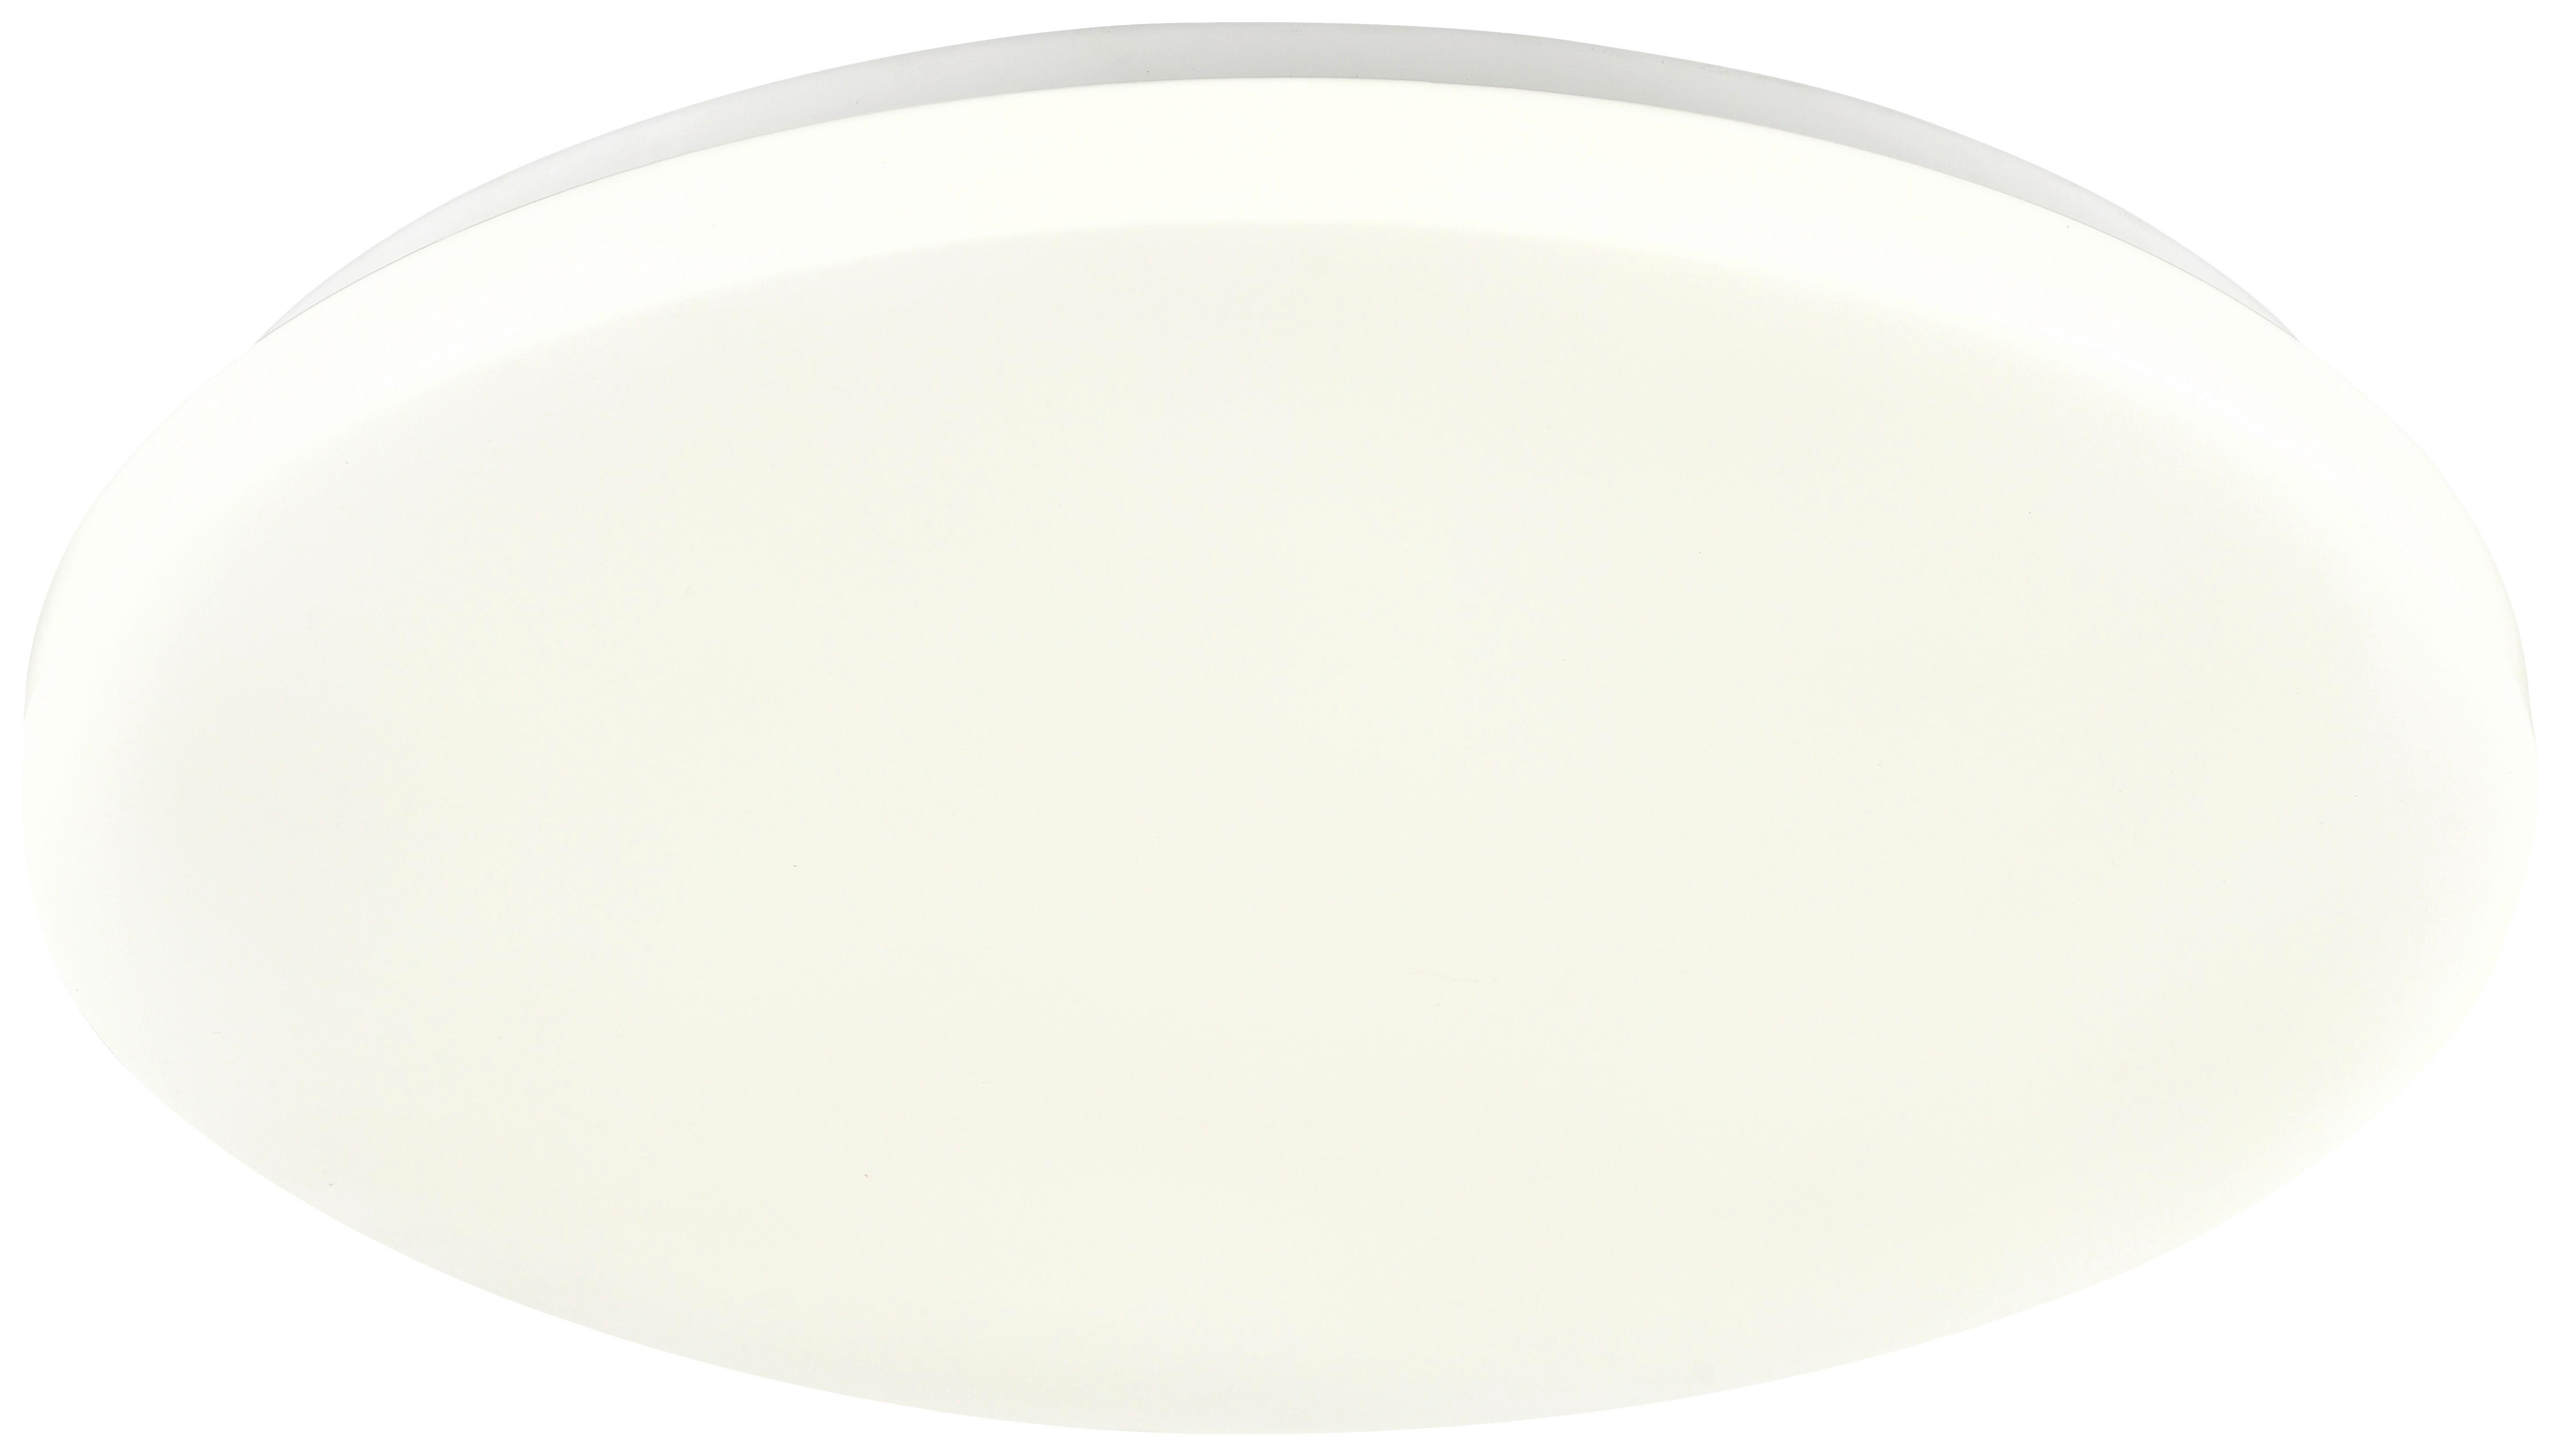 Mennyezeti Lámpa Woter 40cm - Fehér, konvencionális, Műanyag/Fém (39/6,5cm) - Modern Living